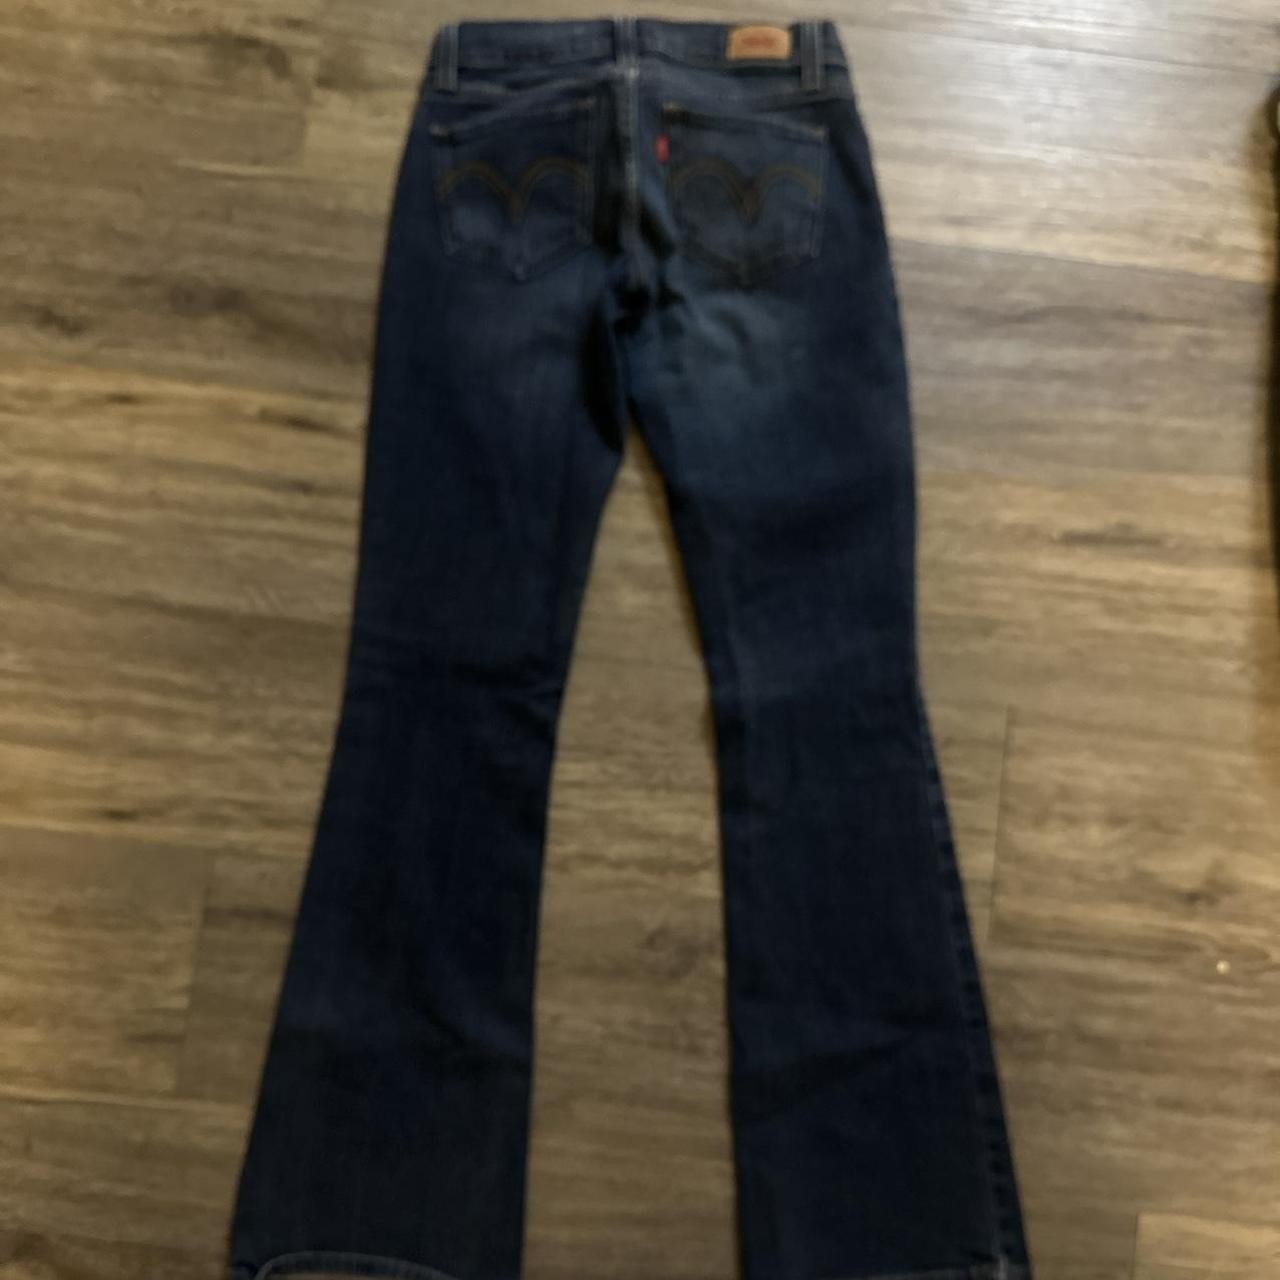 Too super low 524 Vintage Levi’s jeans Bootcut low... - Depop